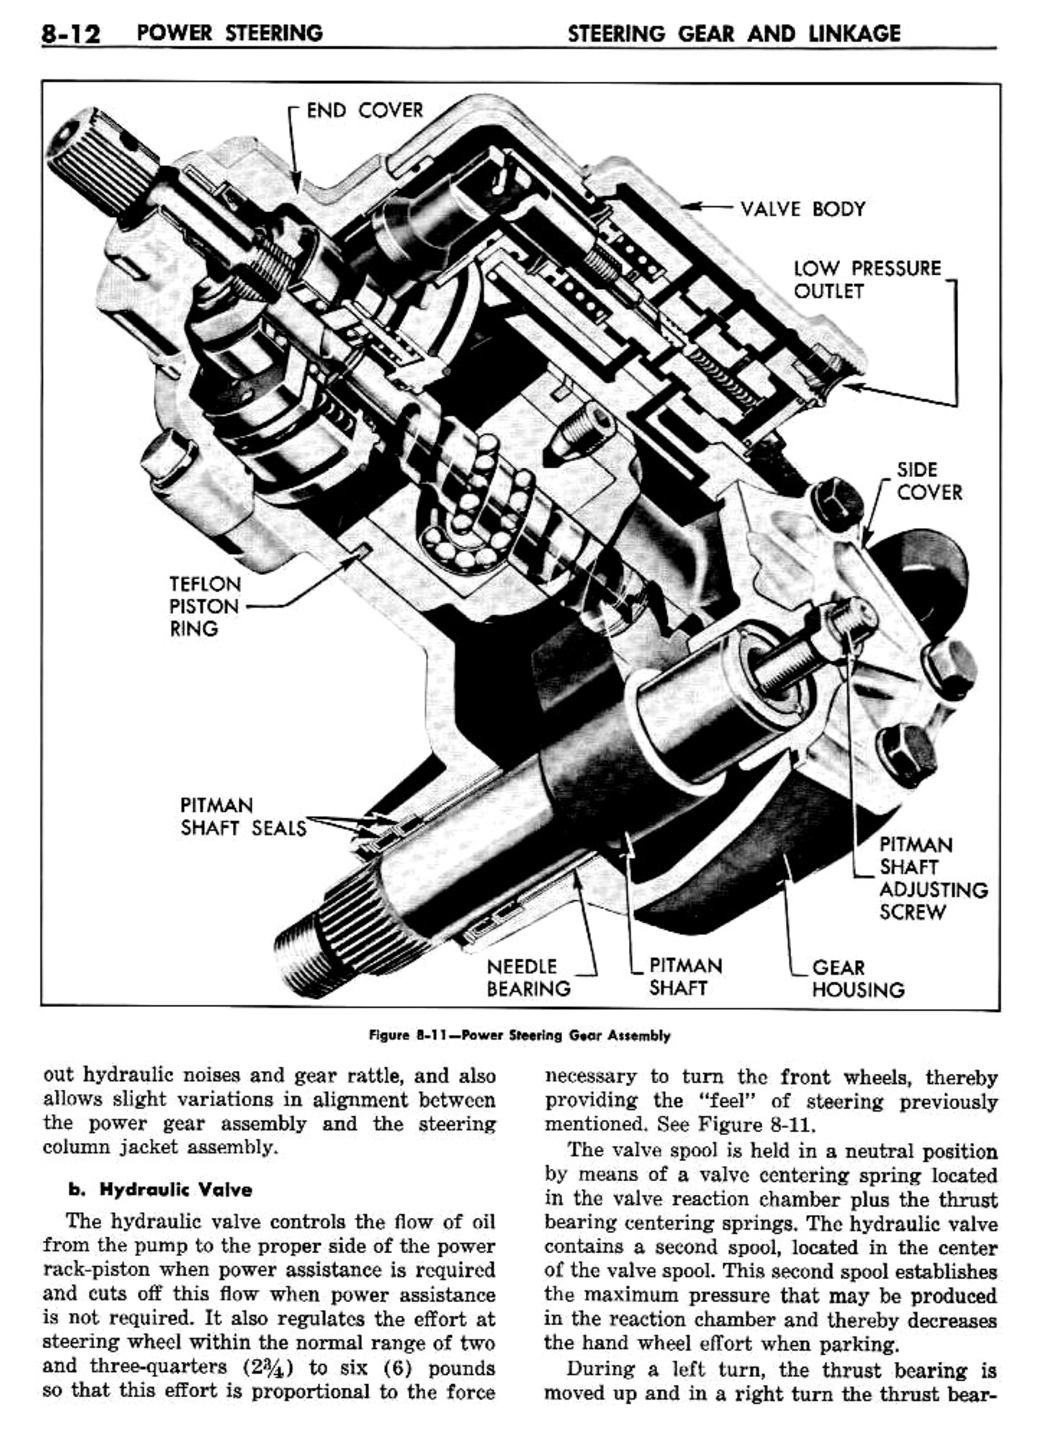 n_09 1957 Buick Shop Manual - Steering-012-012.jpg